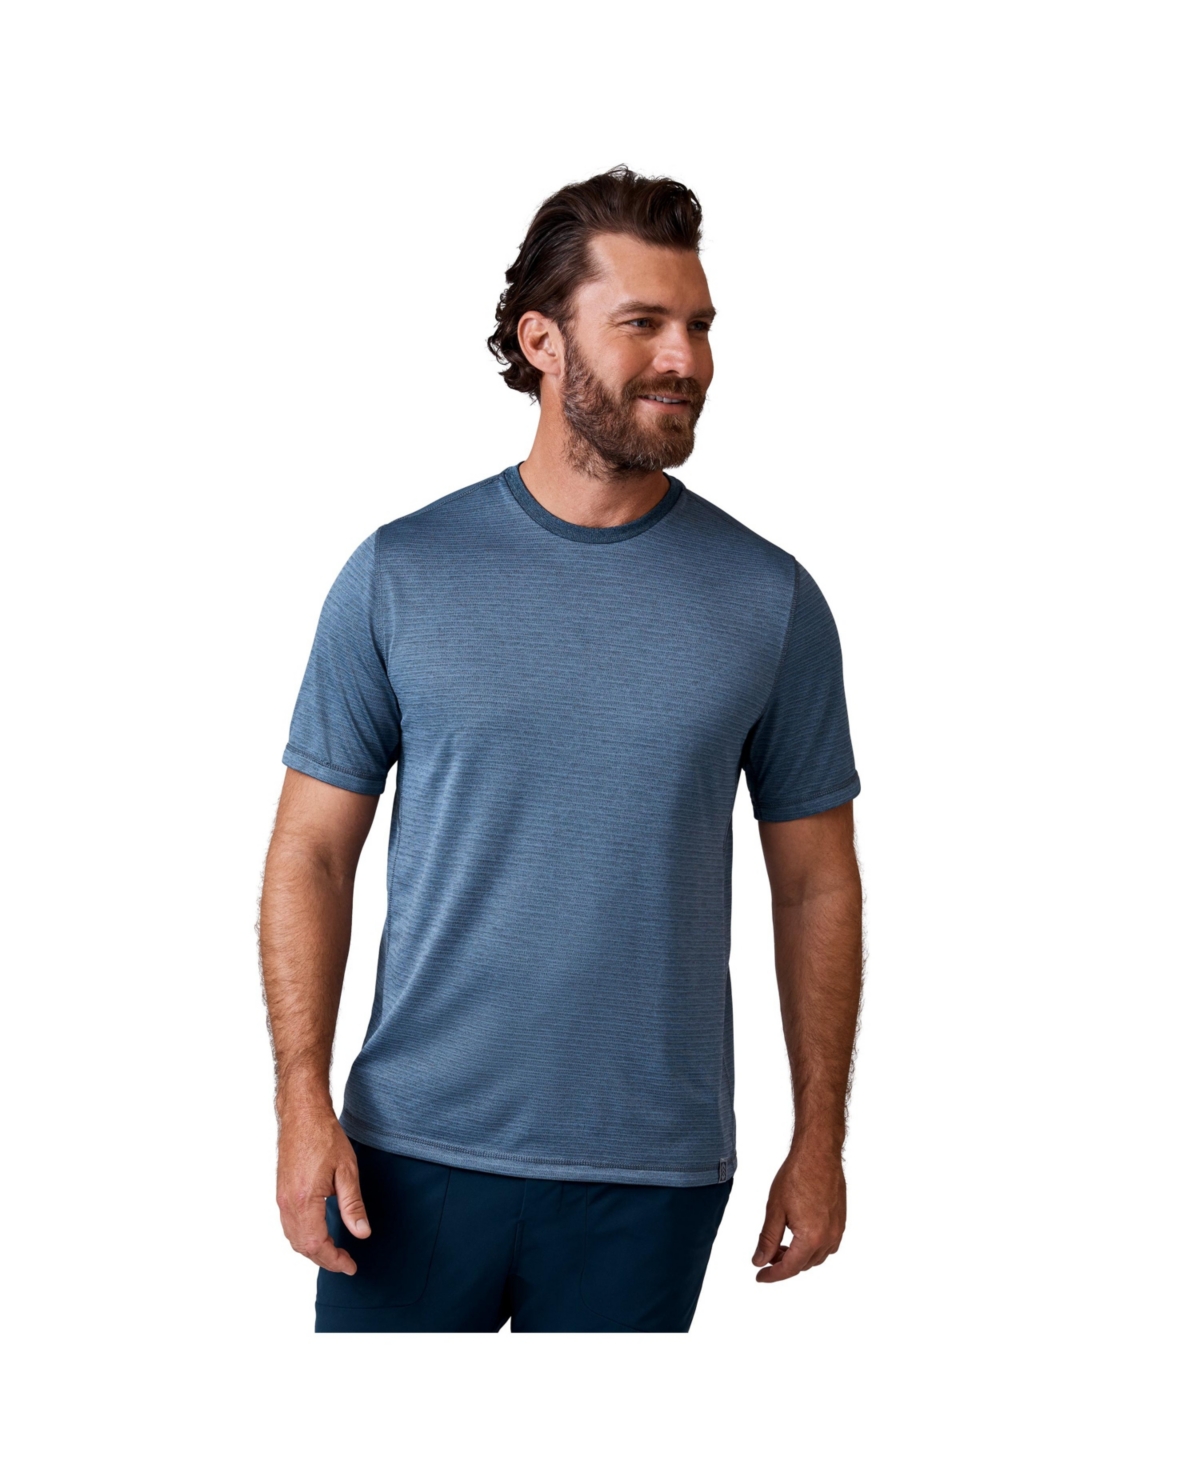 Men's Tech Jacquard Short Sleeve Crew Neck T-Shirt - Compass blue